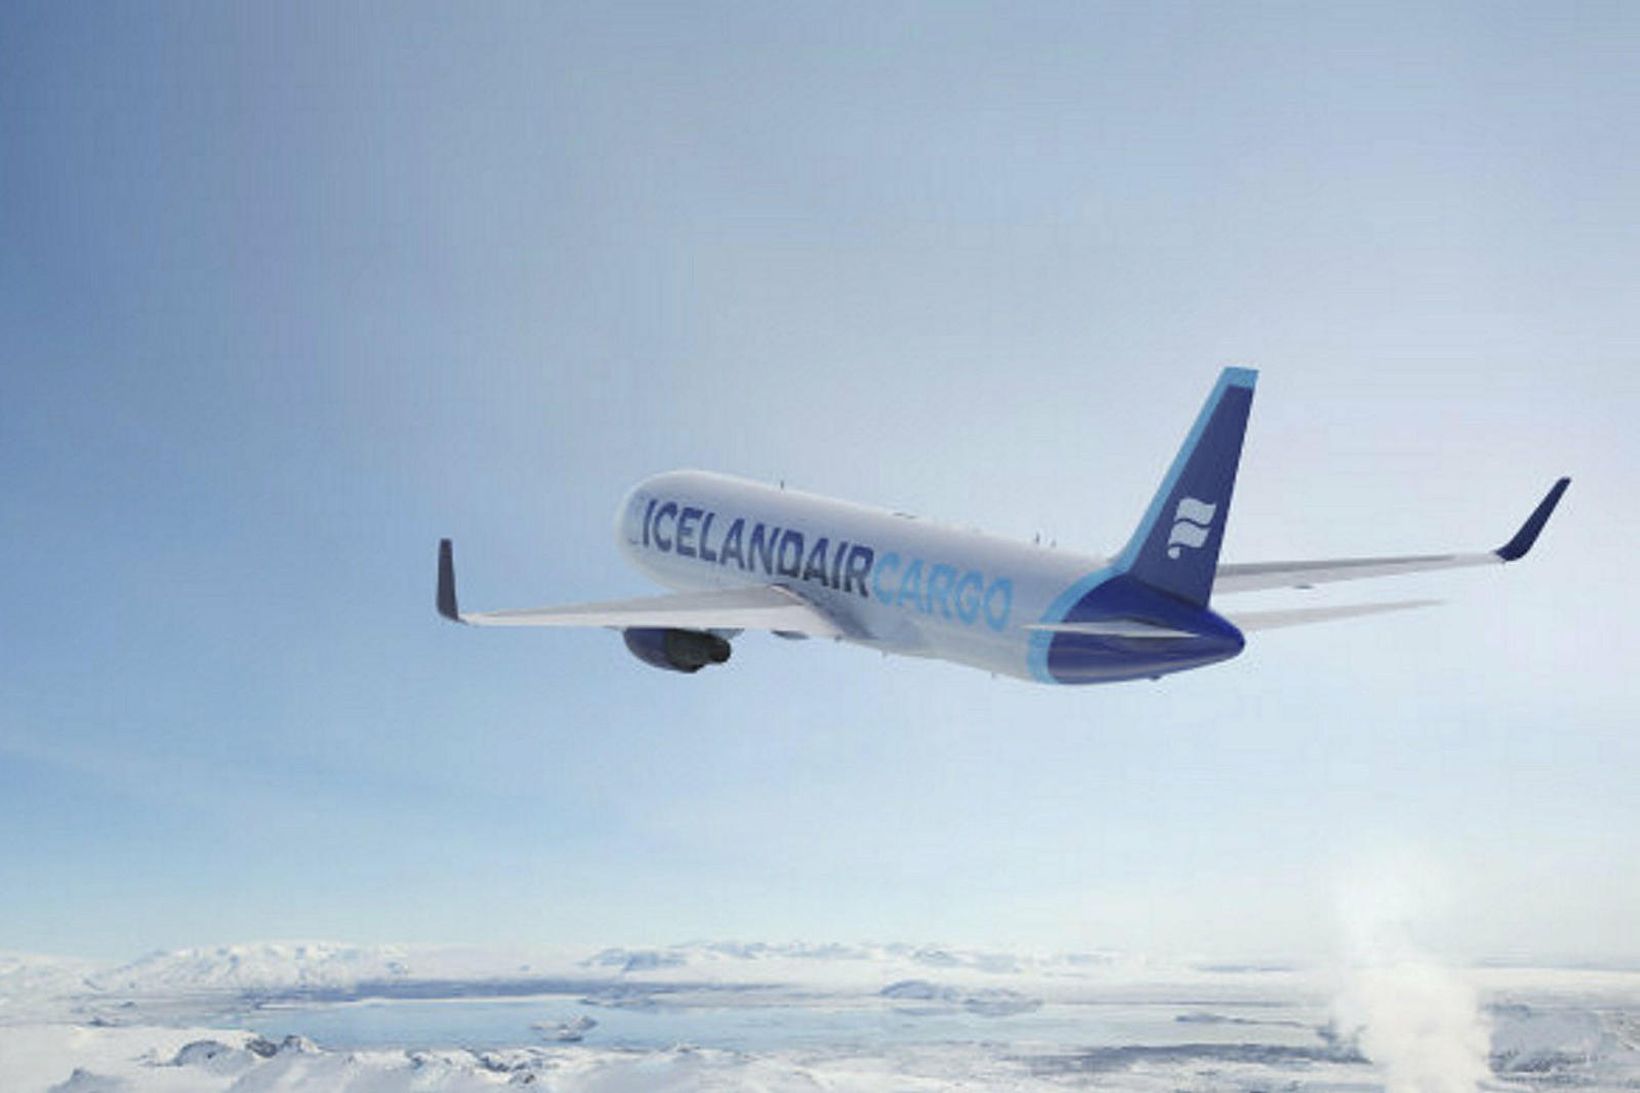 Ný flugvél Icelandair Cargo.